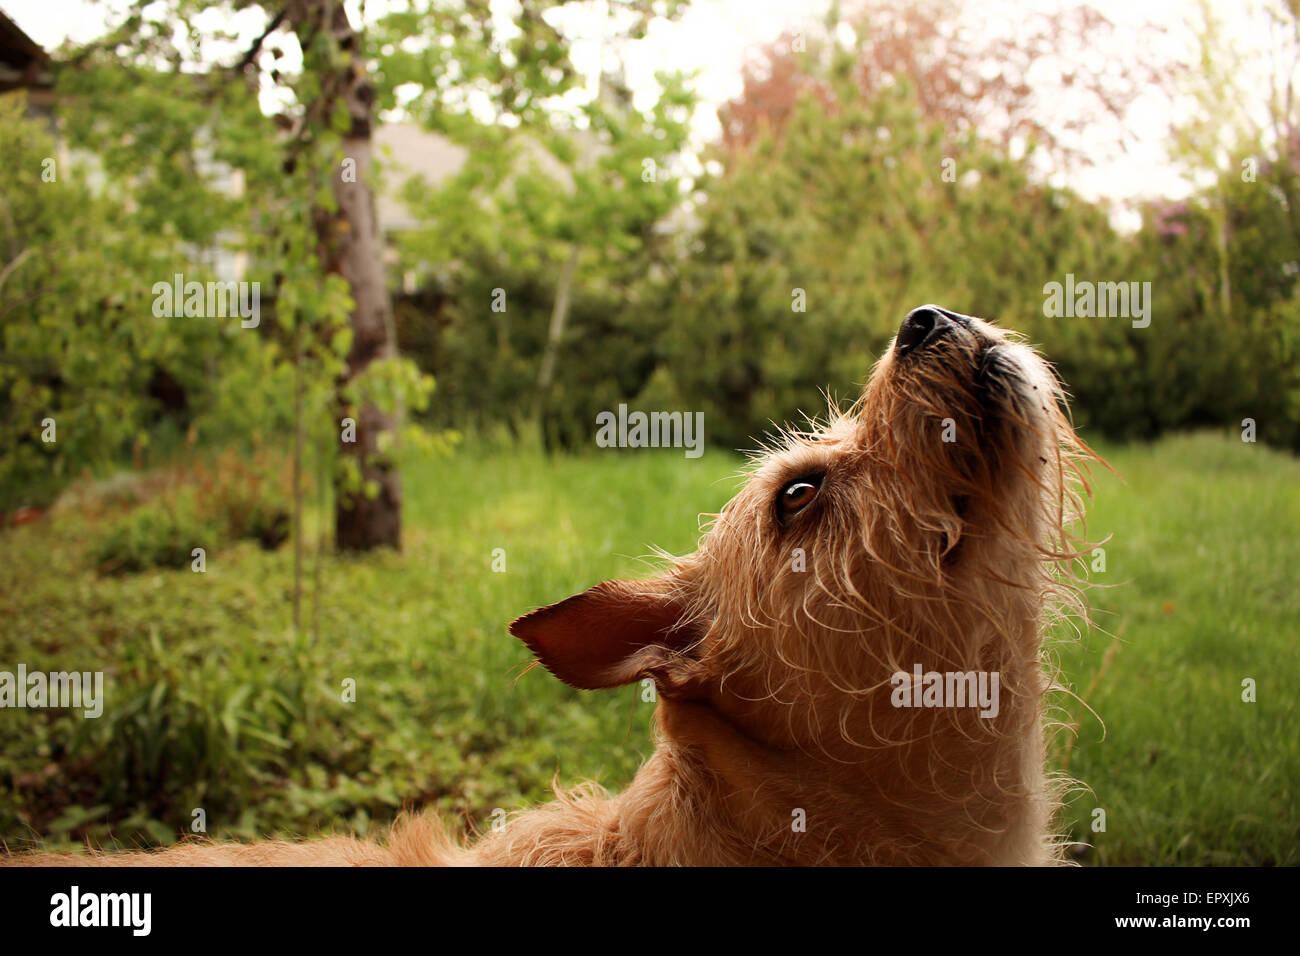 Hund Portrait grünen Rasen unter der Sonne mit Blumen im Hintergrund Stockfoto